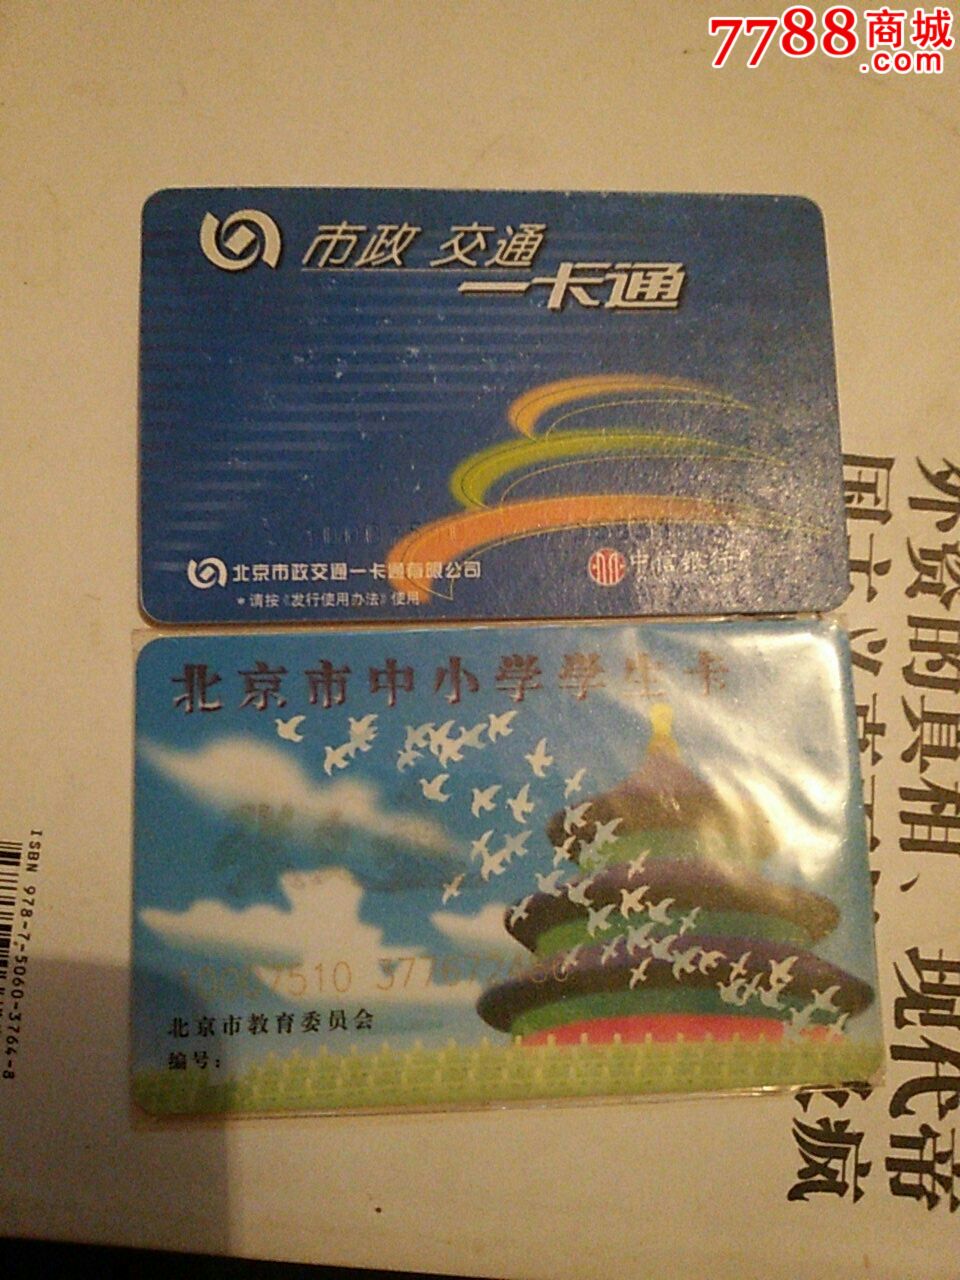 两张北京公交一个学生卡